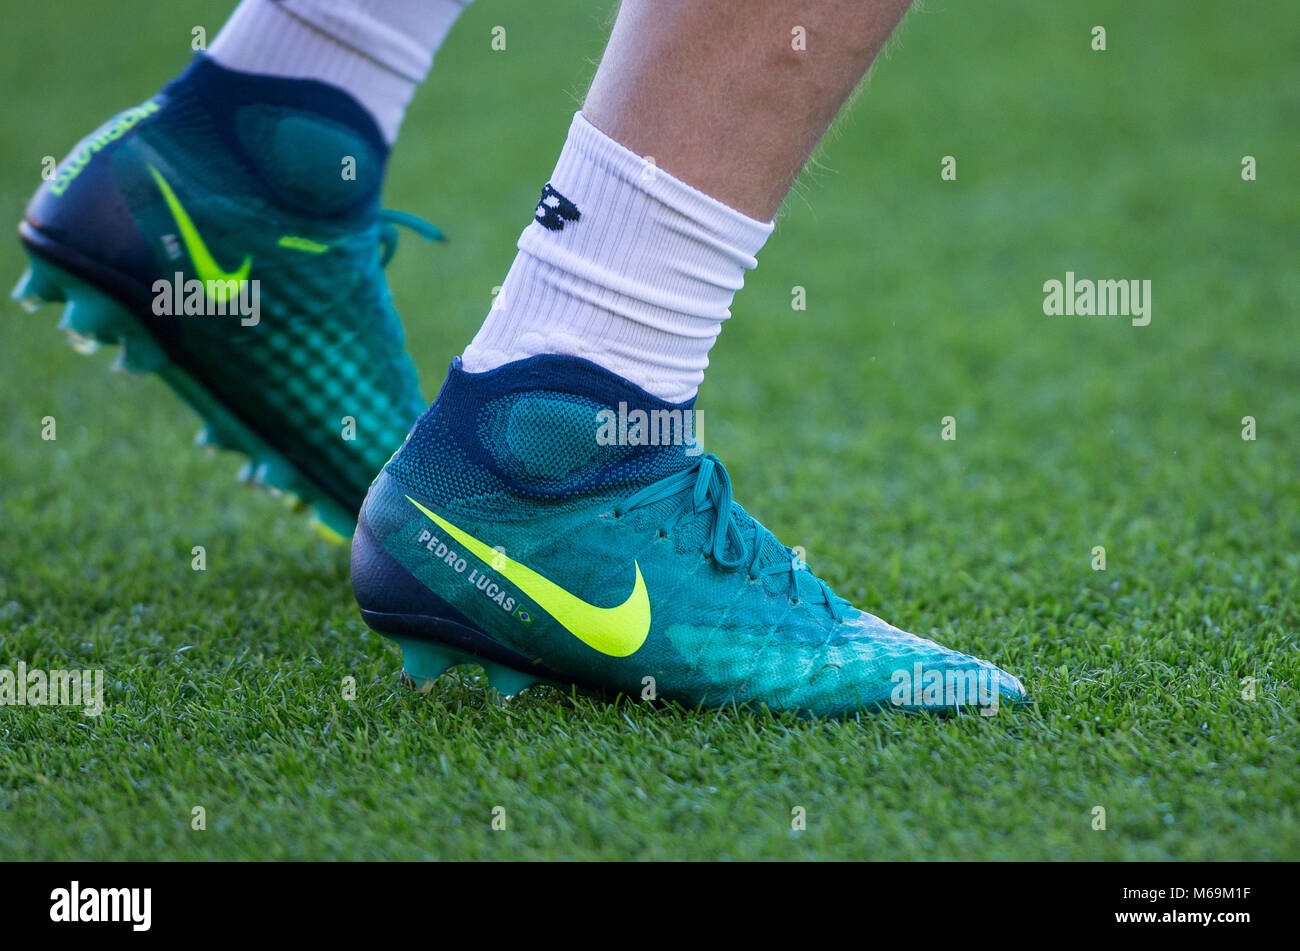 Lucas Leiva von Liverpool Socken & personalisierte Nike Fußballschuhe seine  Söhne angezeigte Name Pedro Lucas während der EPL-Premier League Match  zwischen B Stockfotografie - Alamy